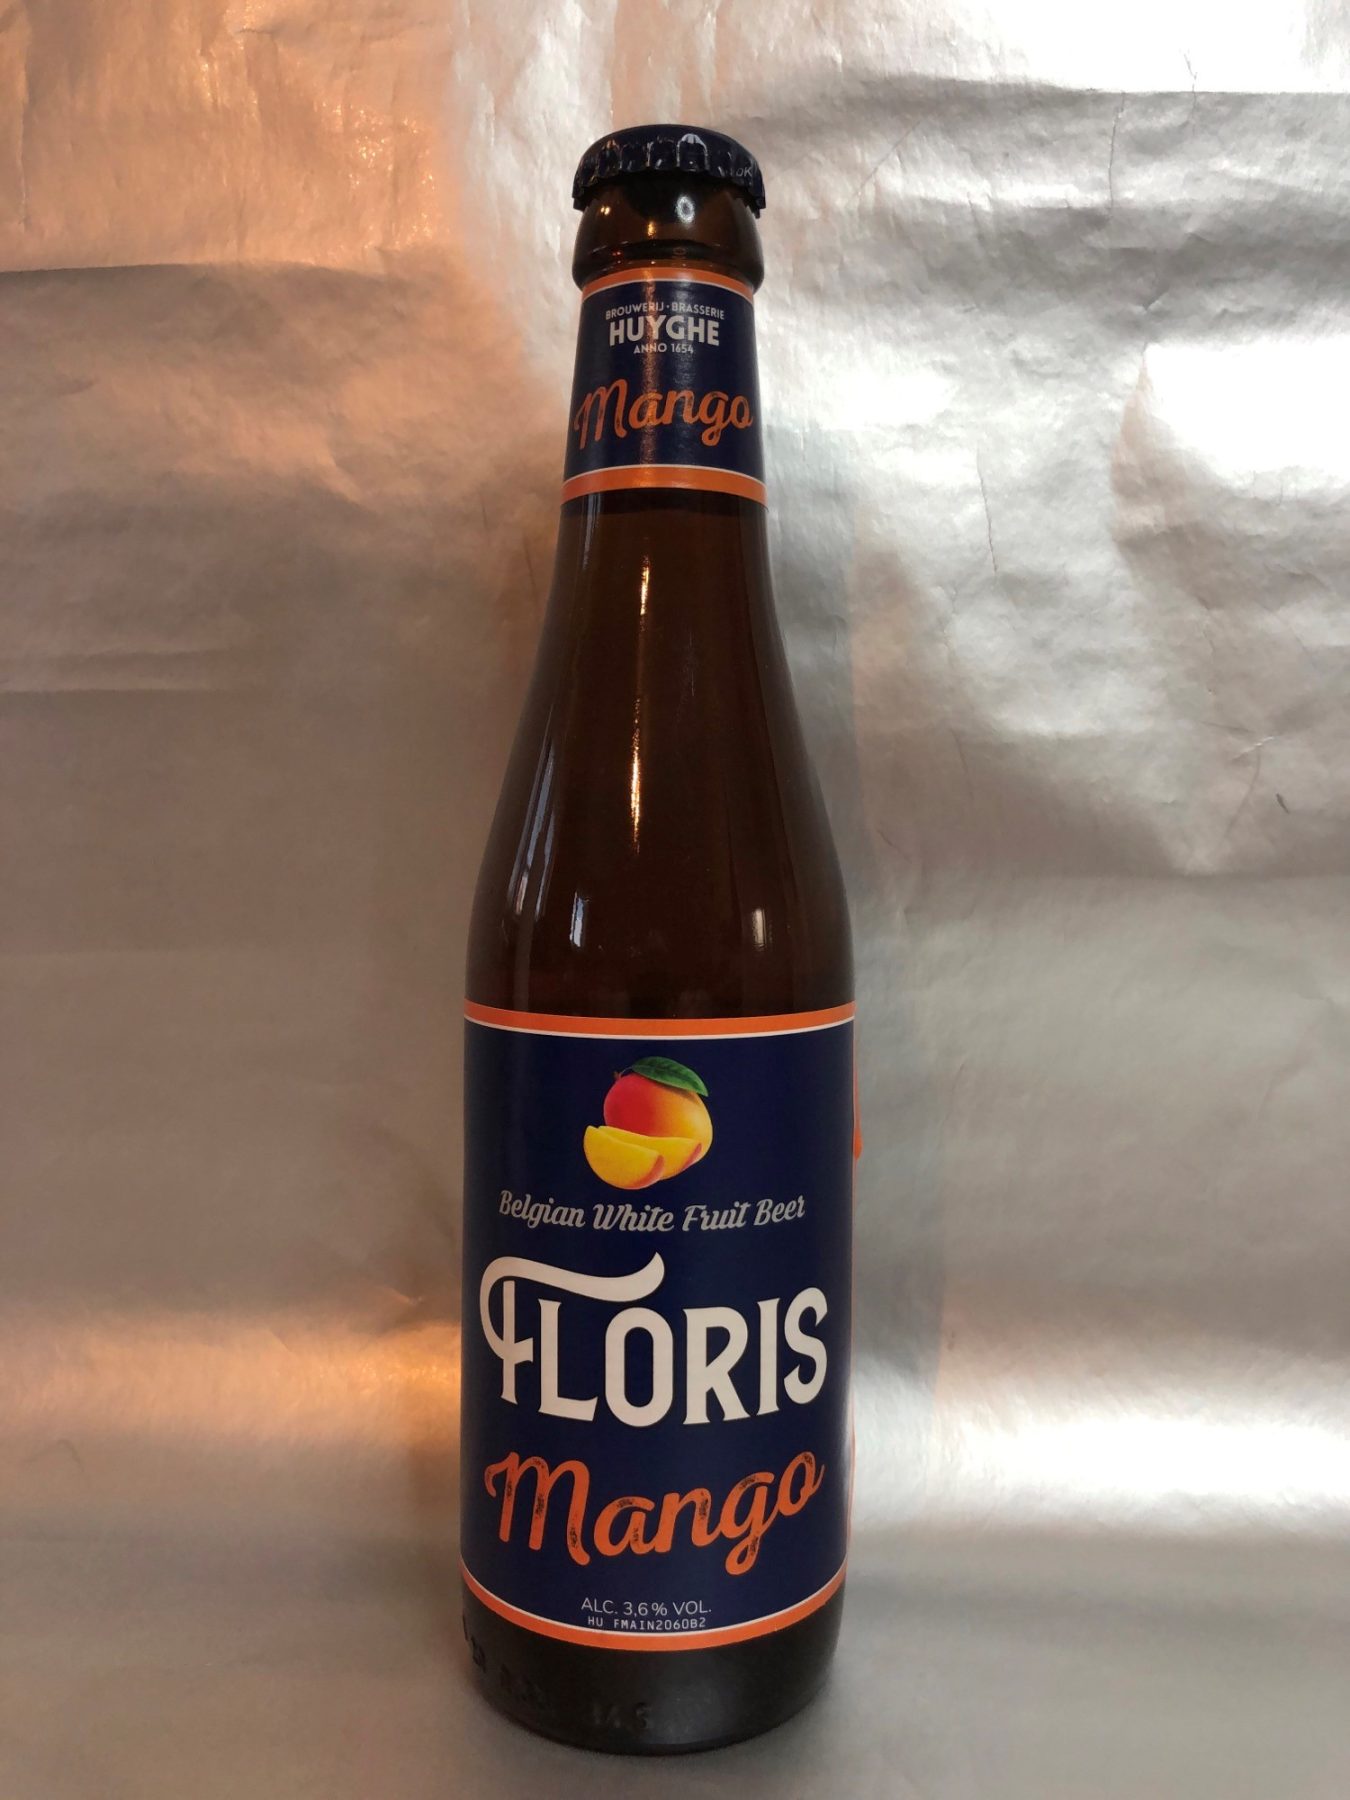 Floris 'Mango' beer